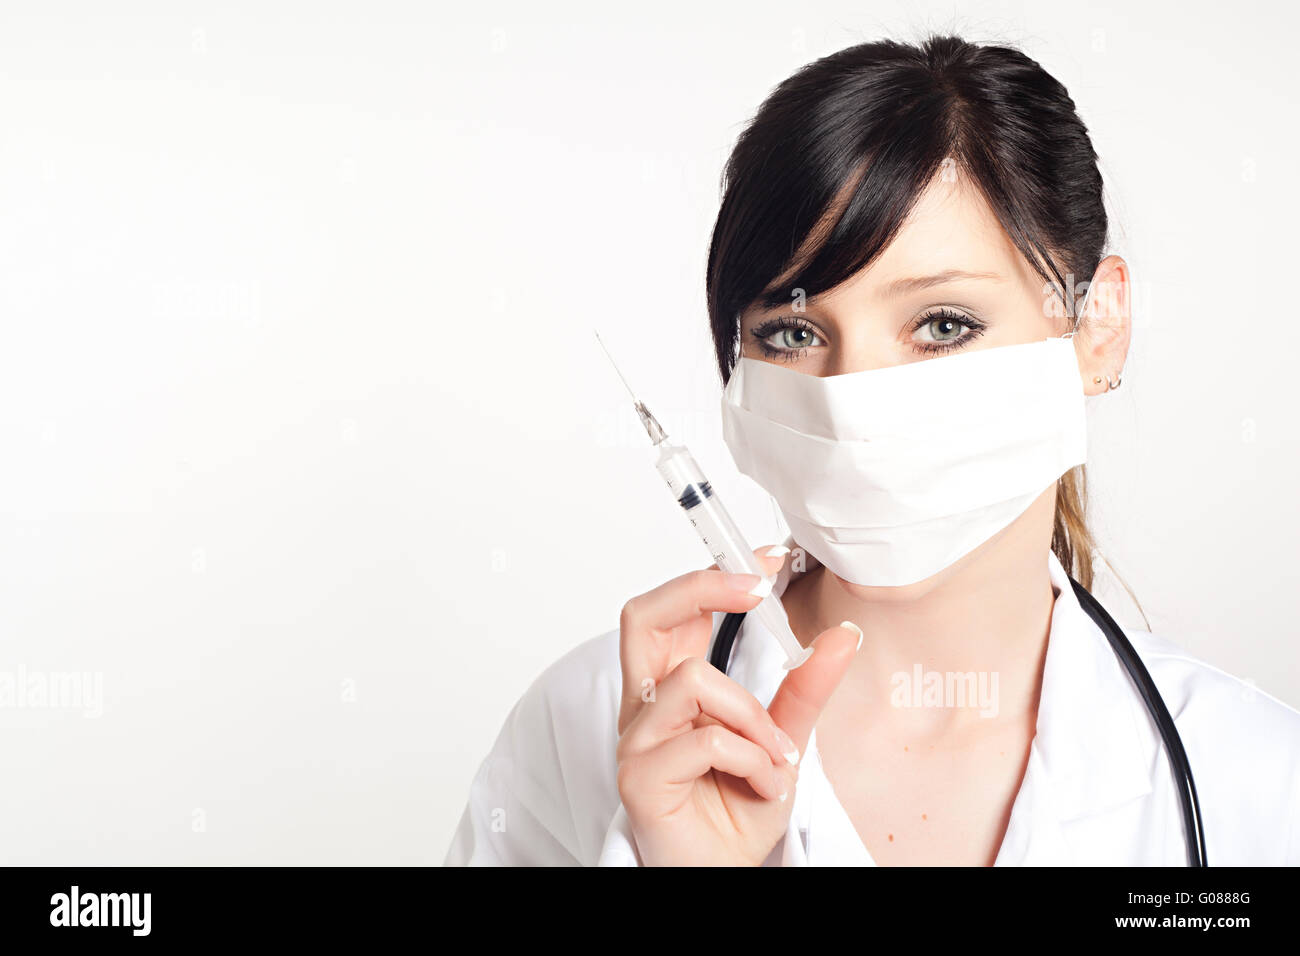 Portrait de femme médecin avec une seringue, isolé sur fond blanc Banque D'Images